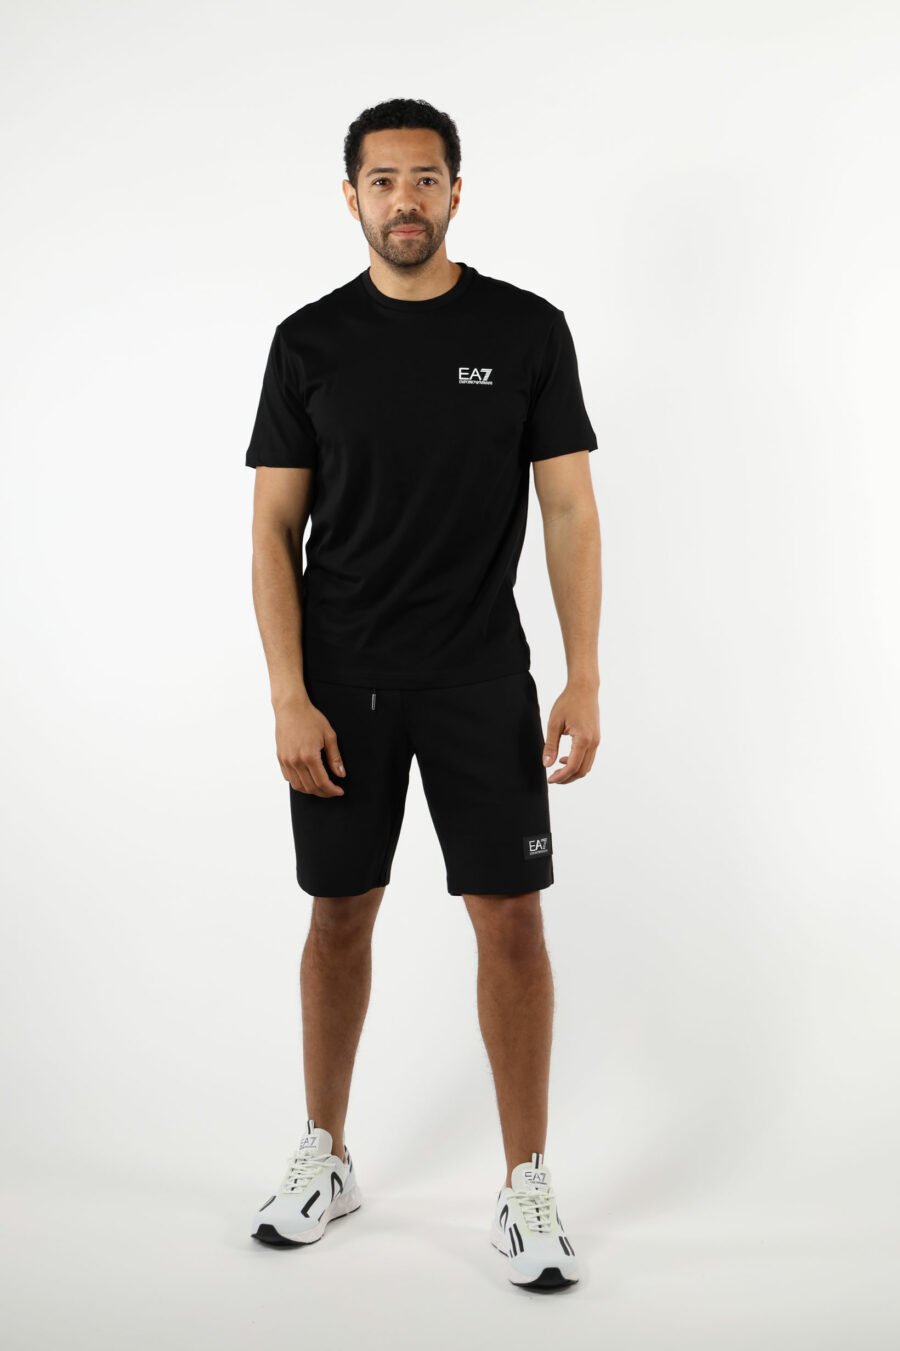 Camiseta negra con maxilogo "lux identity" vertical detrás - 110884